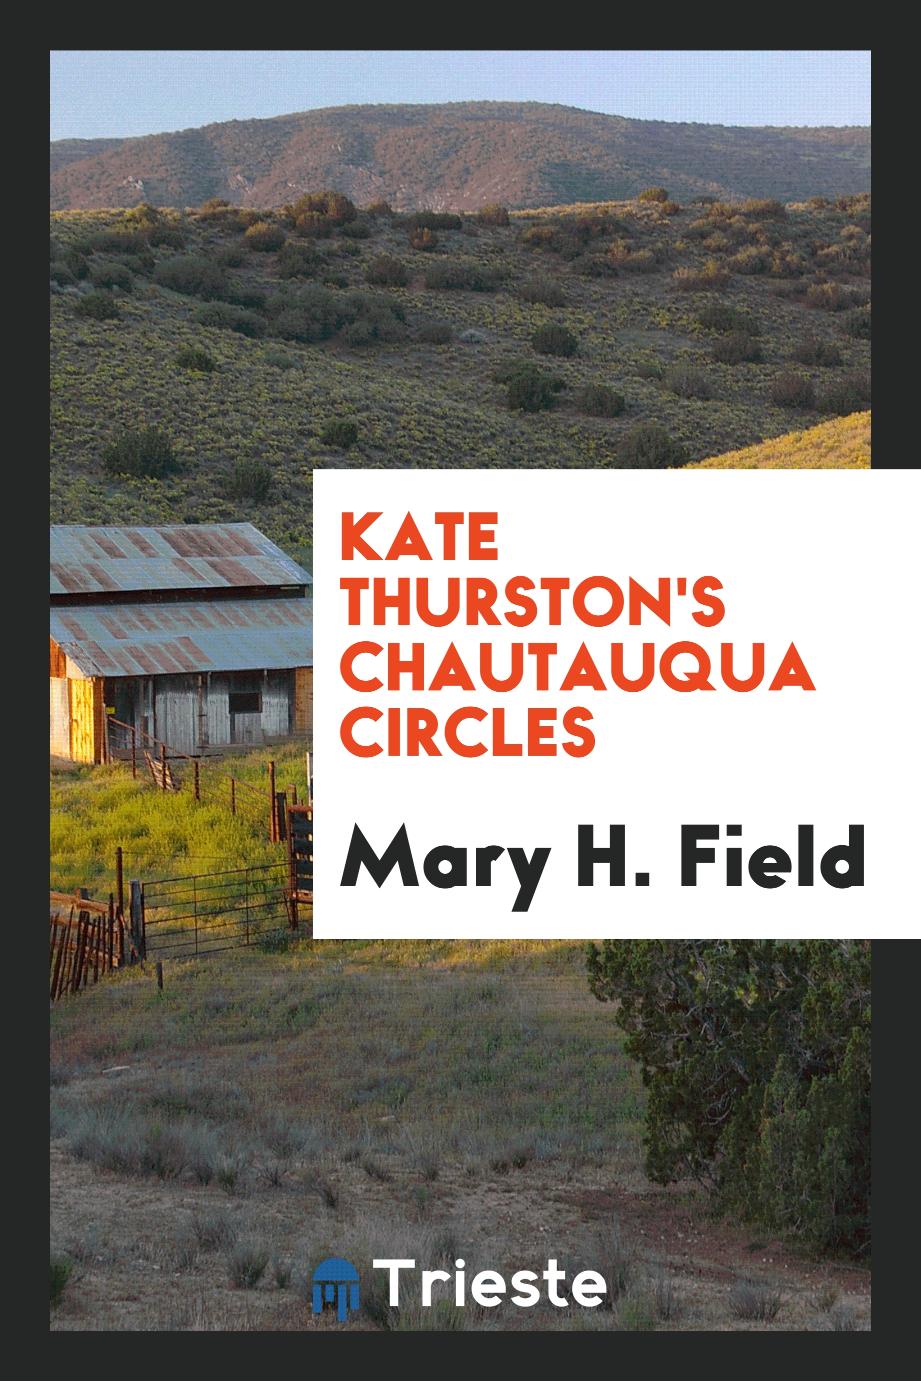 Kate Thurston's Chautauqua circles